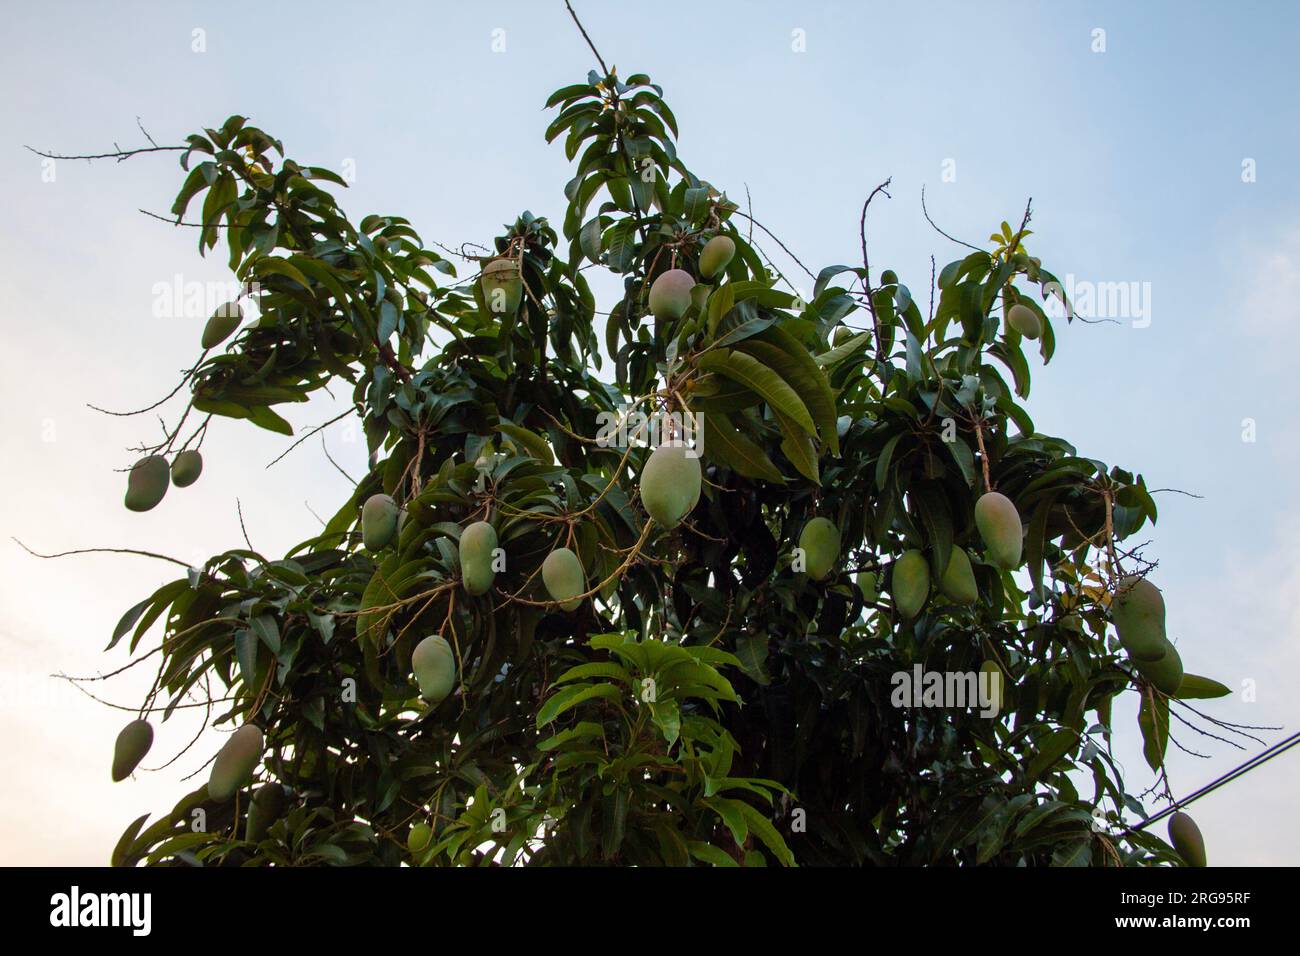 Konzentrieren Sie sich darauf, die Essenz des Mangobaums in seiner Umgebung zu erfassen, seine einzigartigen Eigenschaften und das Gefühl einer reichhaltigen Ernte hervorzuheben. Stockfoto